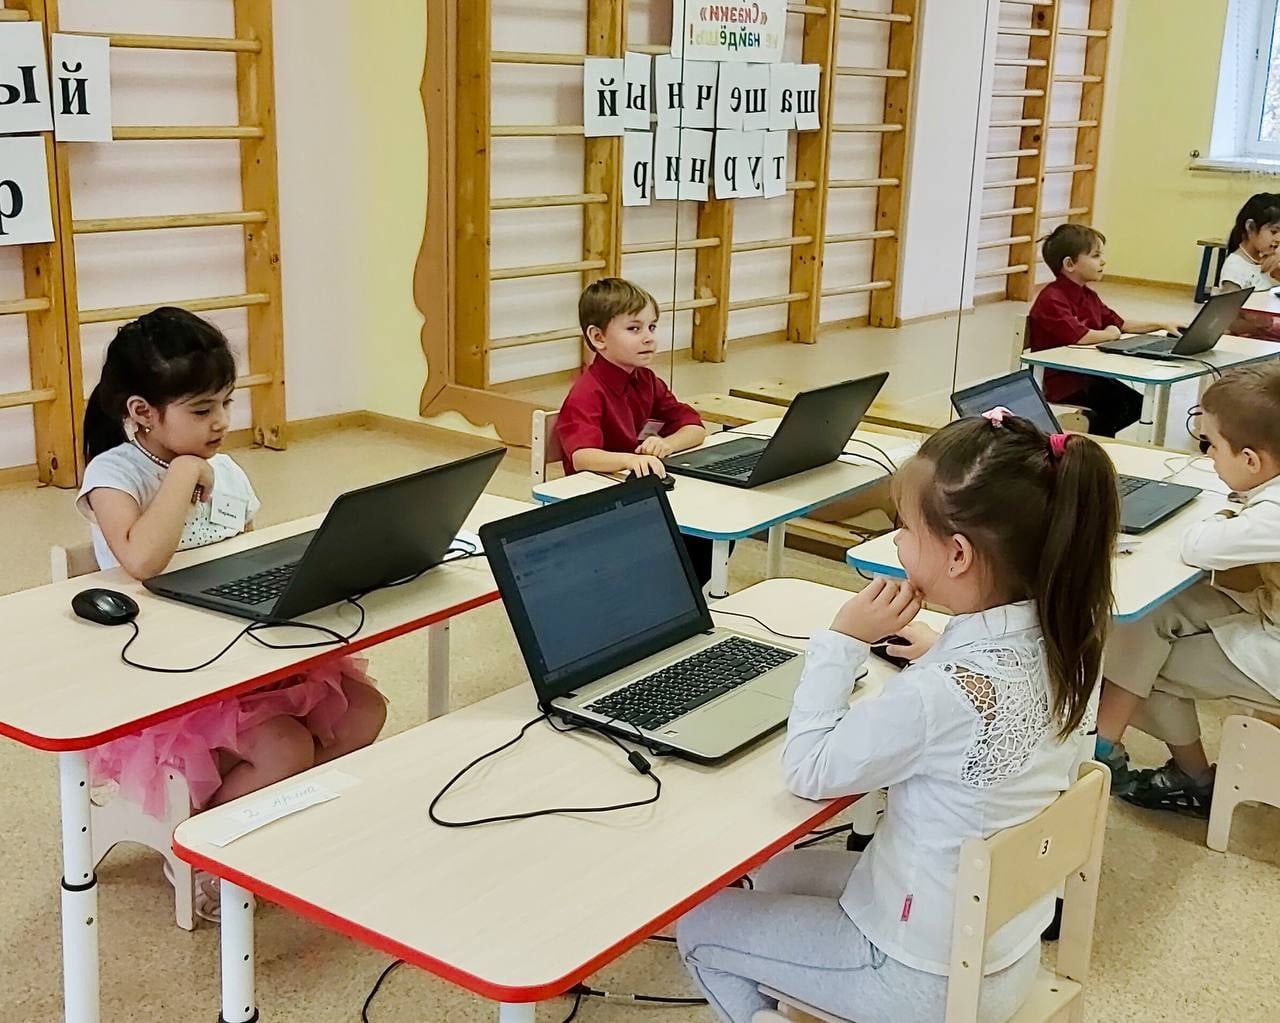 Дошкольники школы №2083 приняли участие в отборочном туре по онлайн-игре в шашки